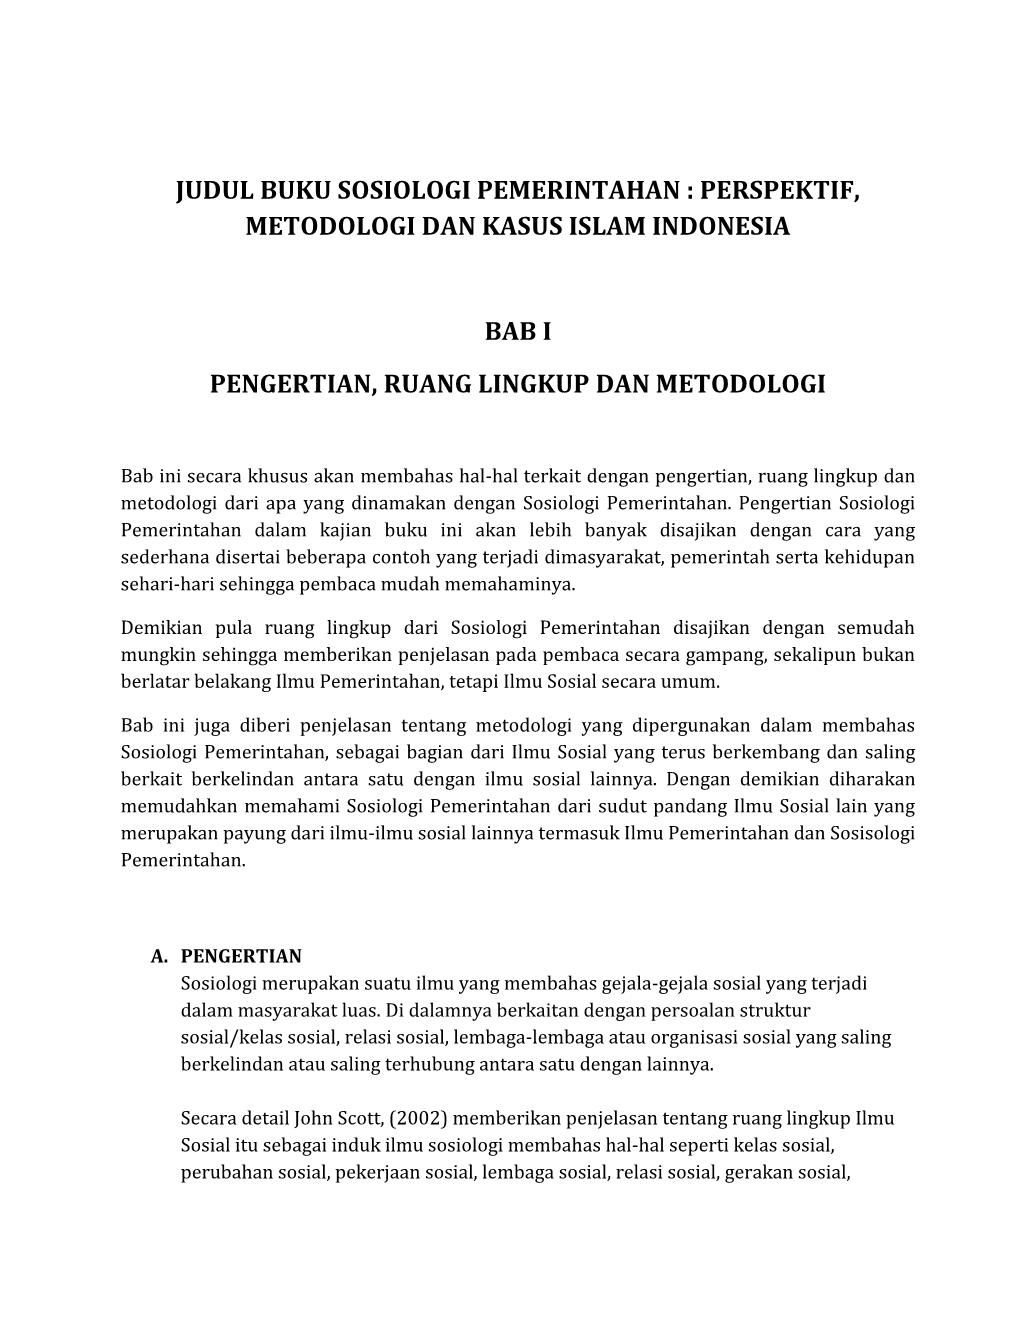 Judul Buku Sosiologi Pemerintahan : Perspektif, Metodologi Dan Kasus Islam Indonesia